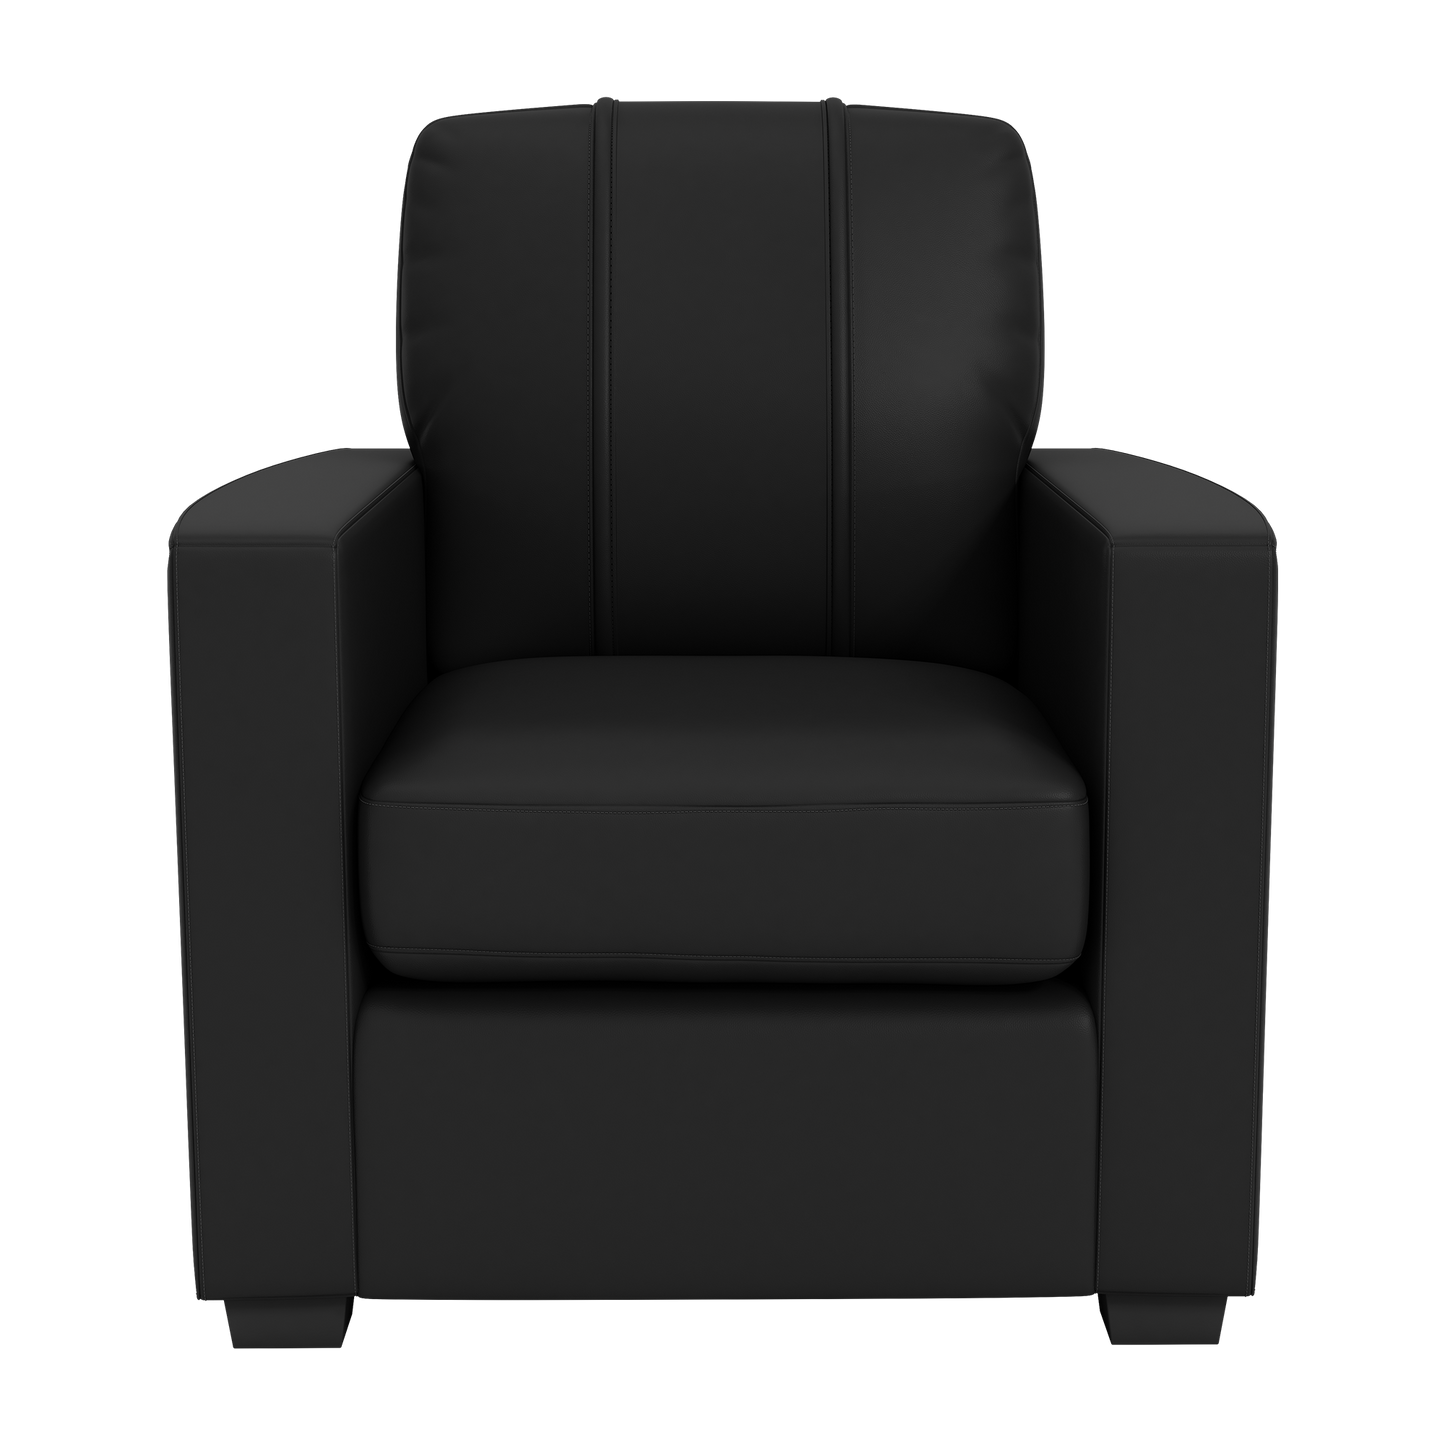 Silver Club Chair with LA Galaxy Wordmark Logo